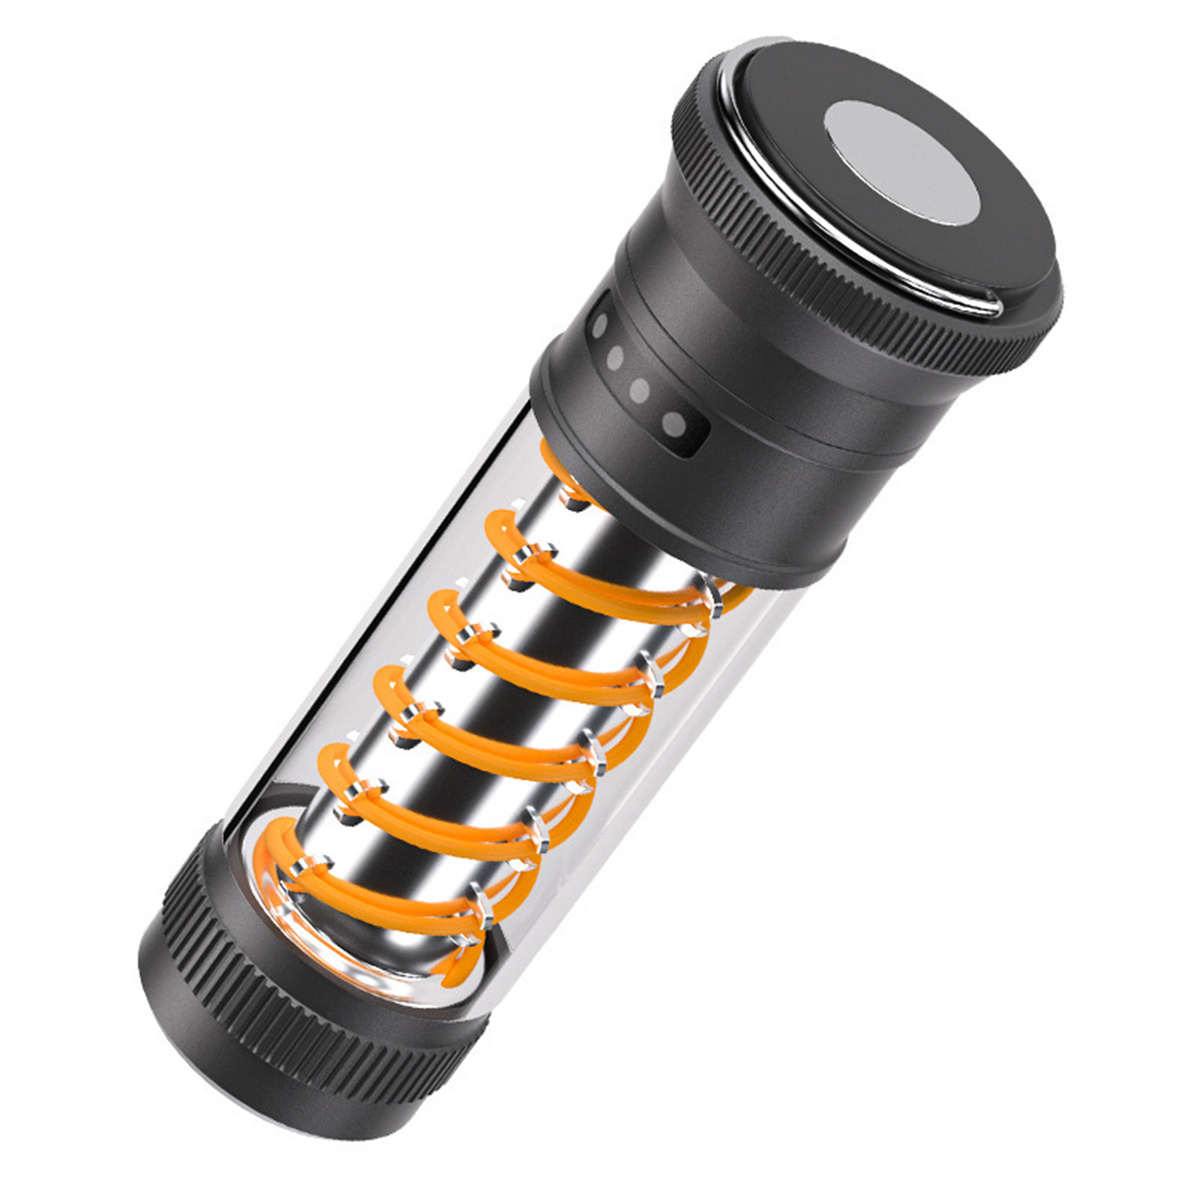 UWOT Outdoor-Taschenlampe: Stromverbrauchsbeständig, Doppelspirallicht, tragbar,Gold wasserdicht und Taschenlampe